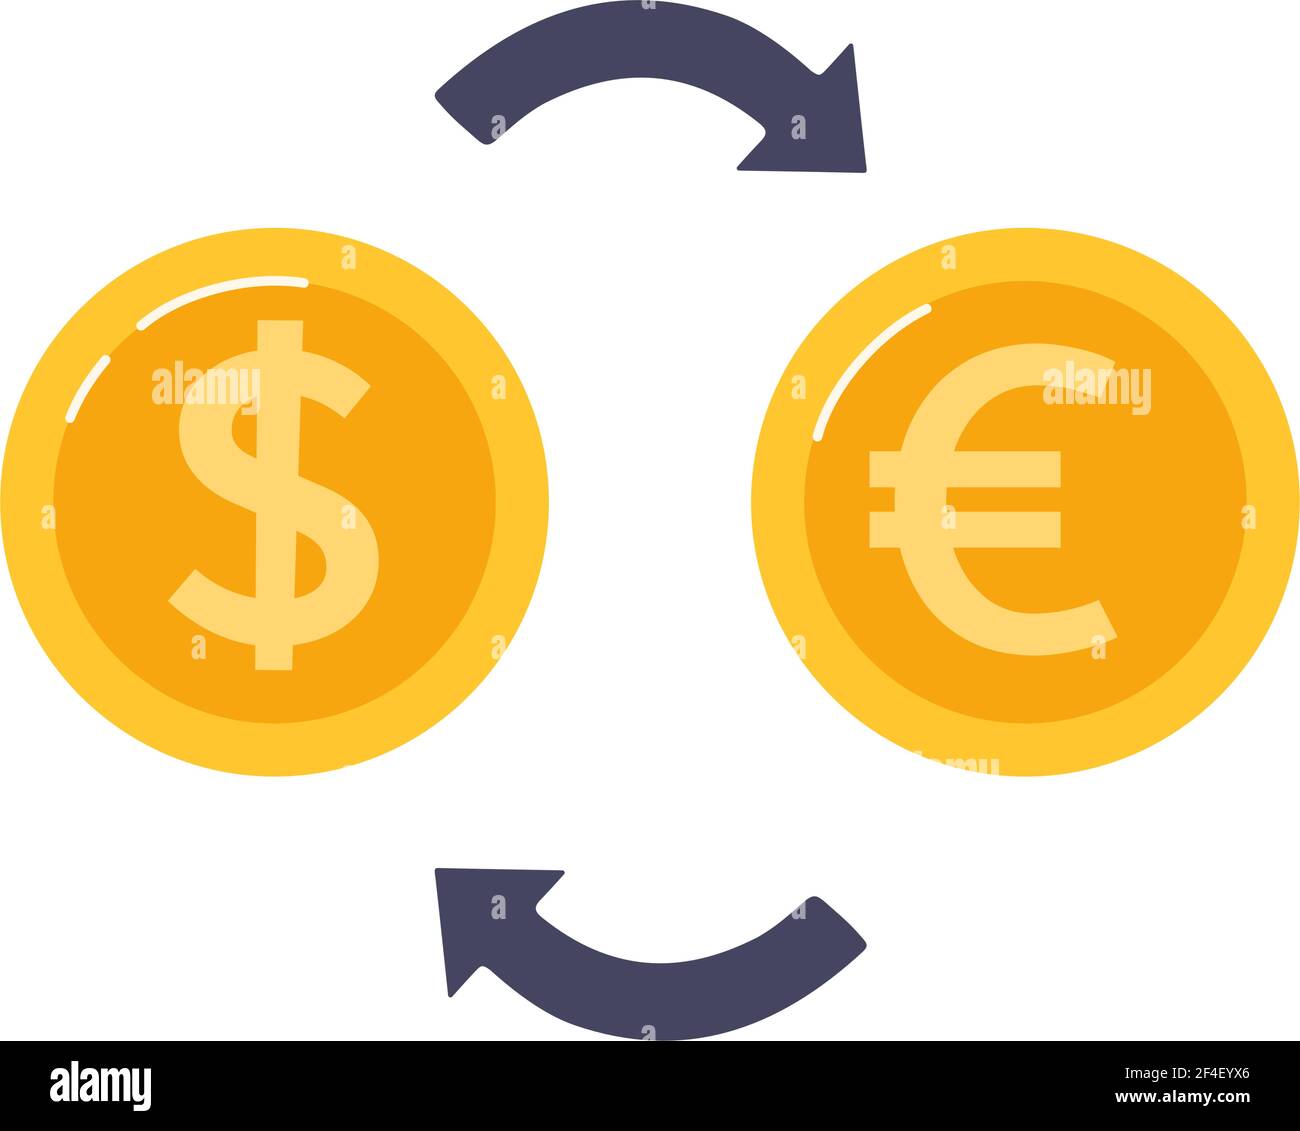 Cambio de dólar por euro. Monedas de oro y flechas entre... Cambio de moneda. Ilustración vectorial en estilo plano, aislada Ilustración del Vector